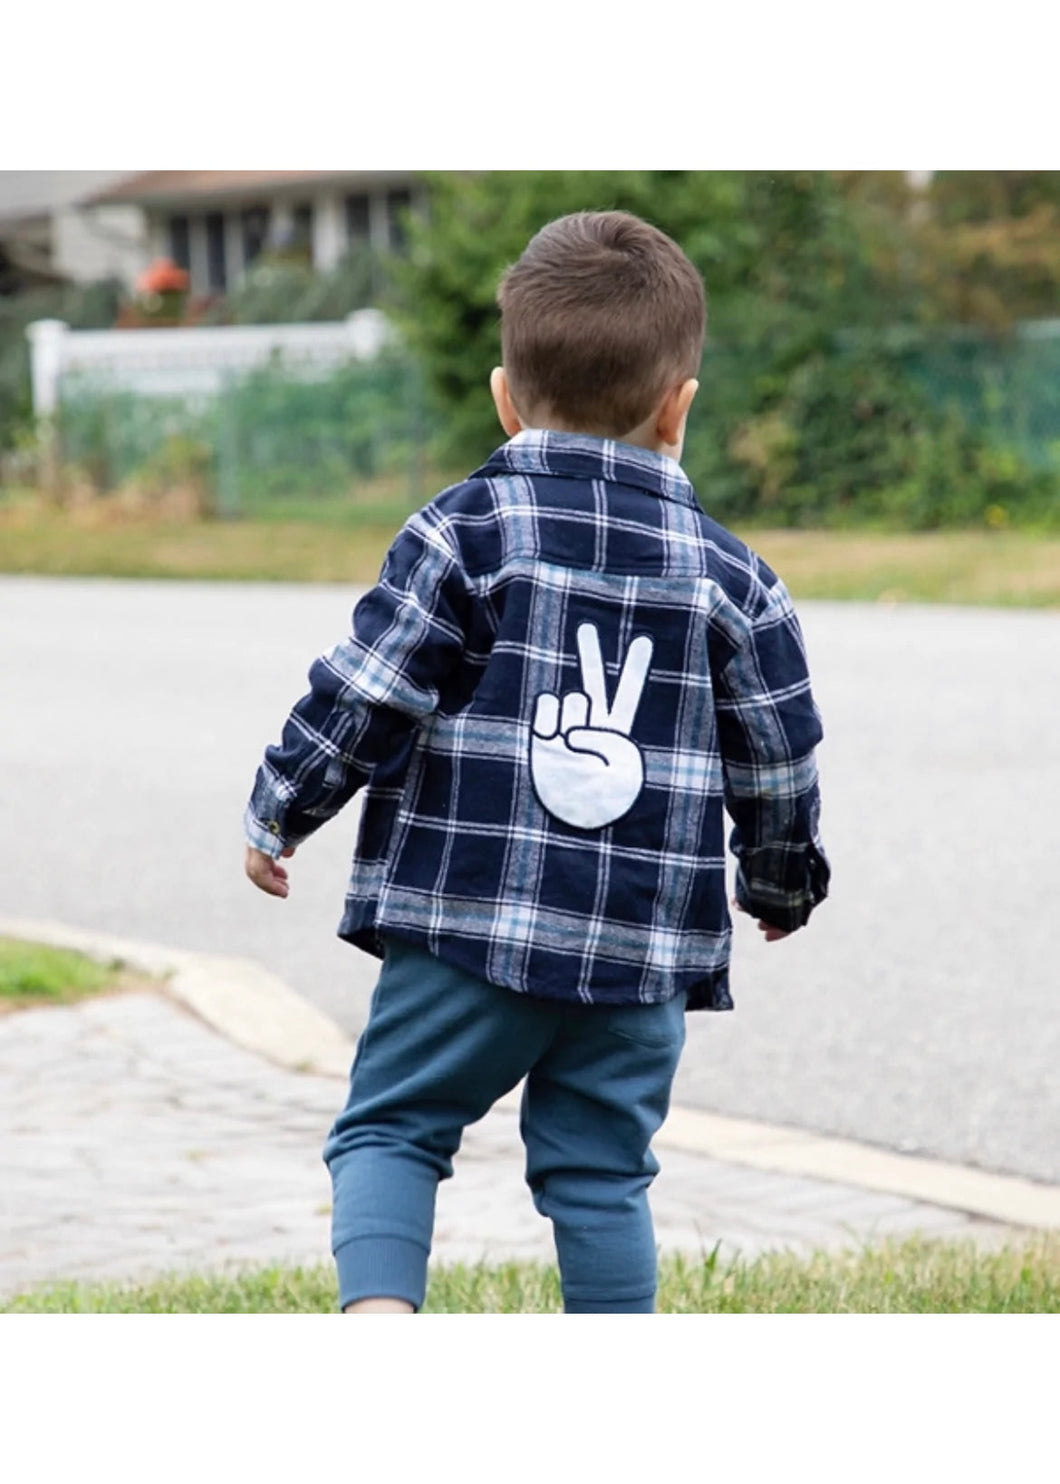 boys peace hand flannel shirt